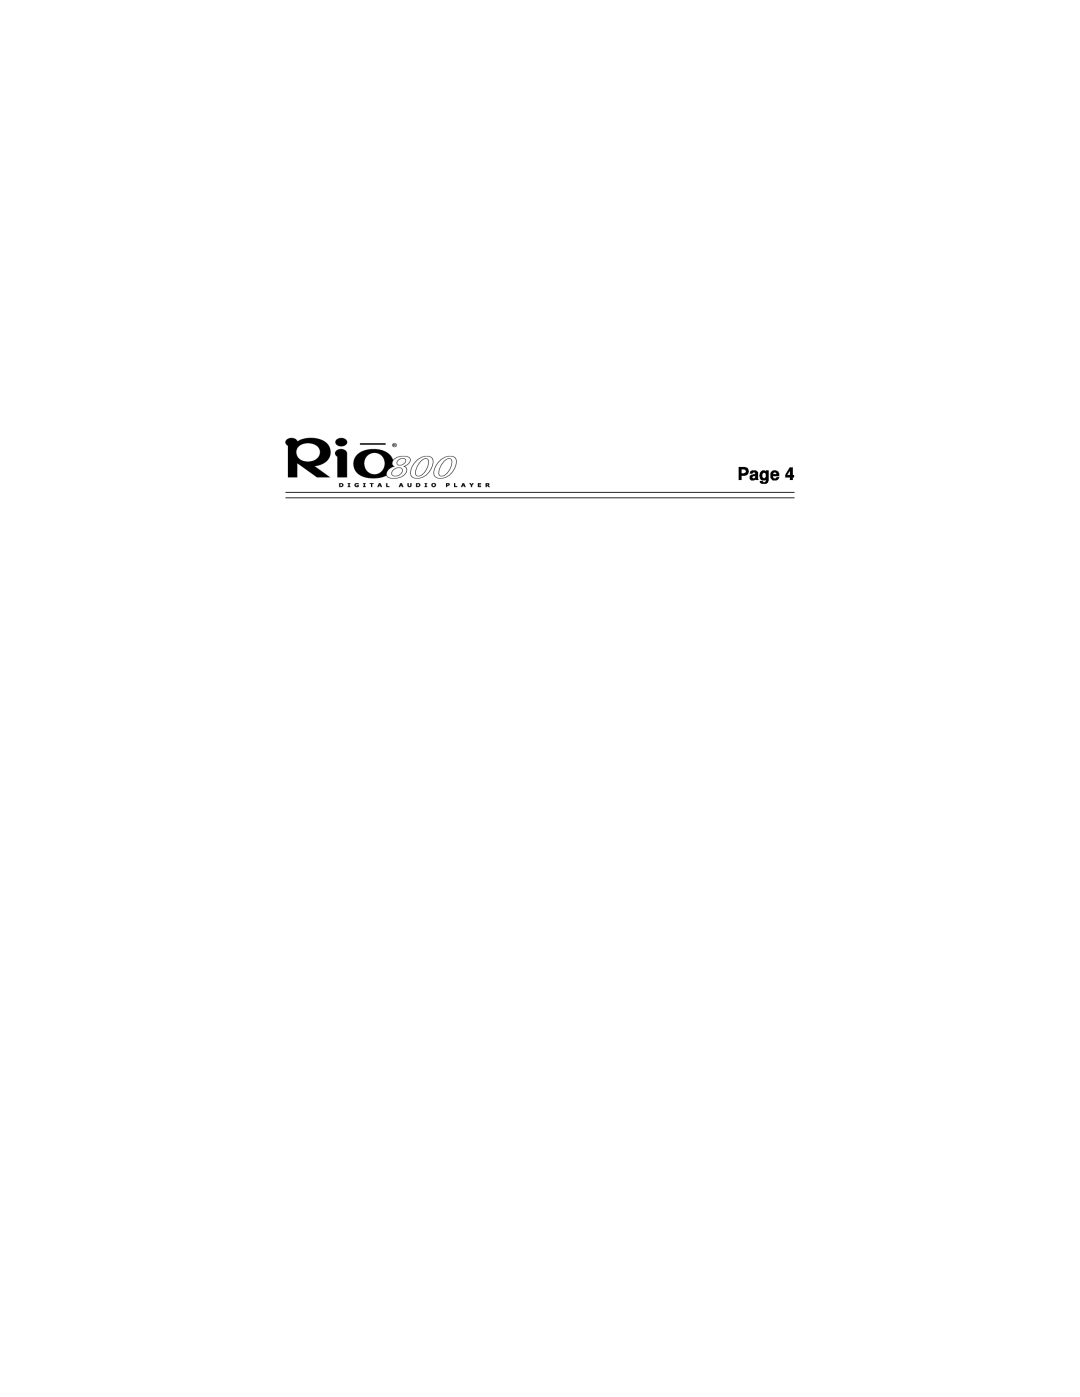 Rio Audio Rio 800 manual Page 